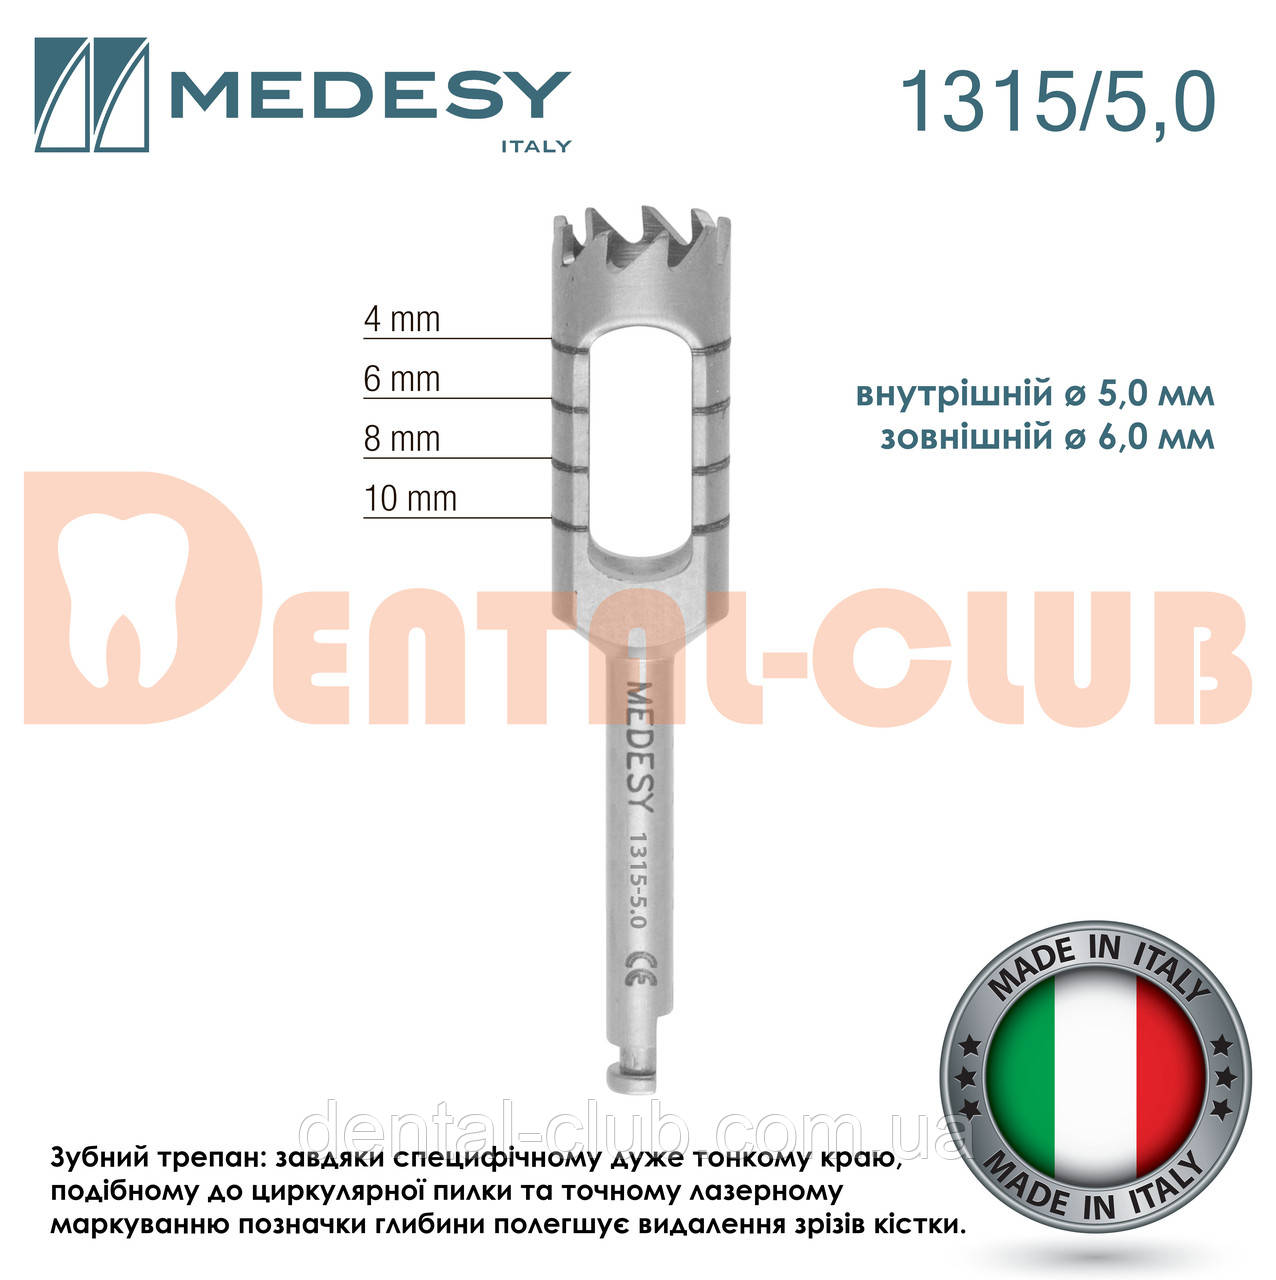 Трепан для кутового наконечника для кісткових блоків, діаметр 5,0 мм – 6,0 мм, Medesy 1315/5,0